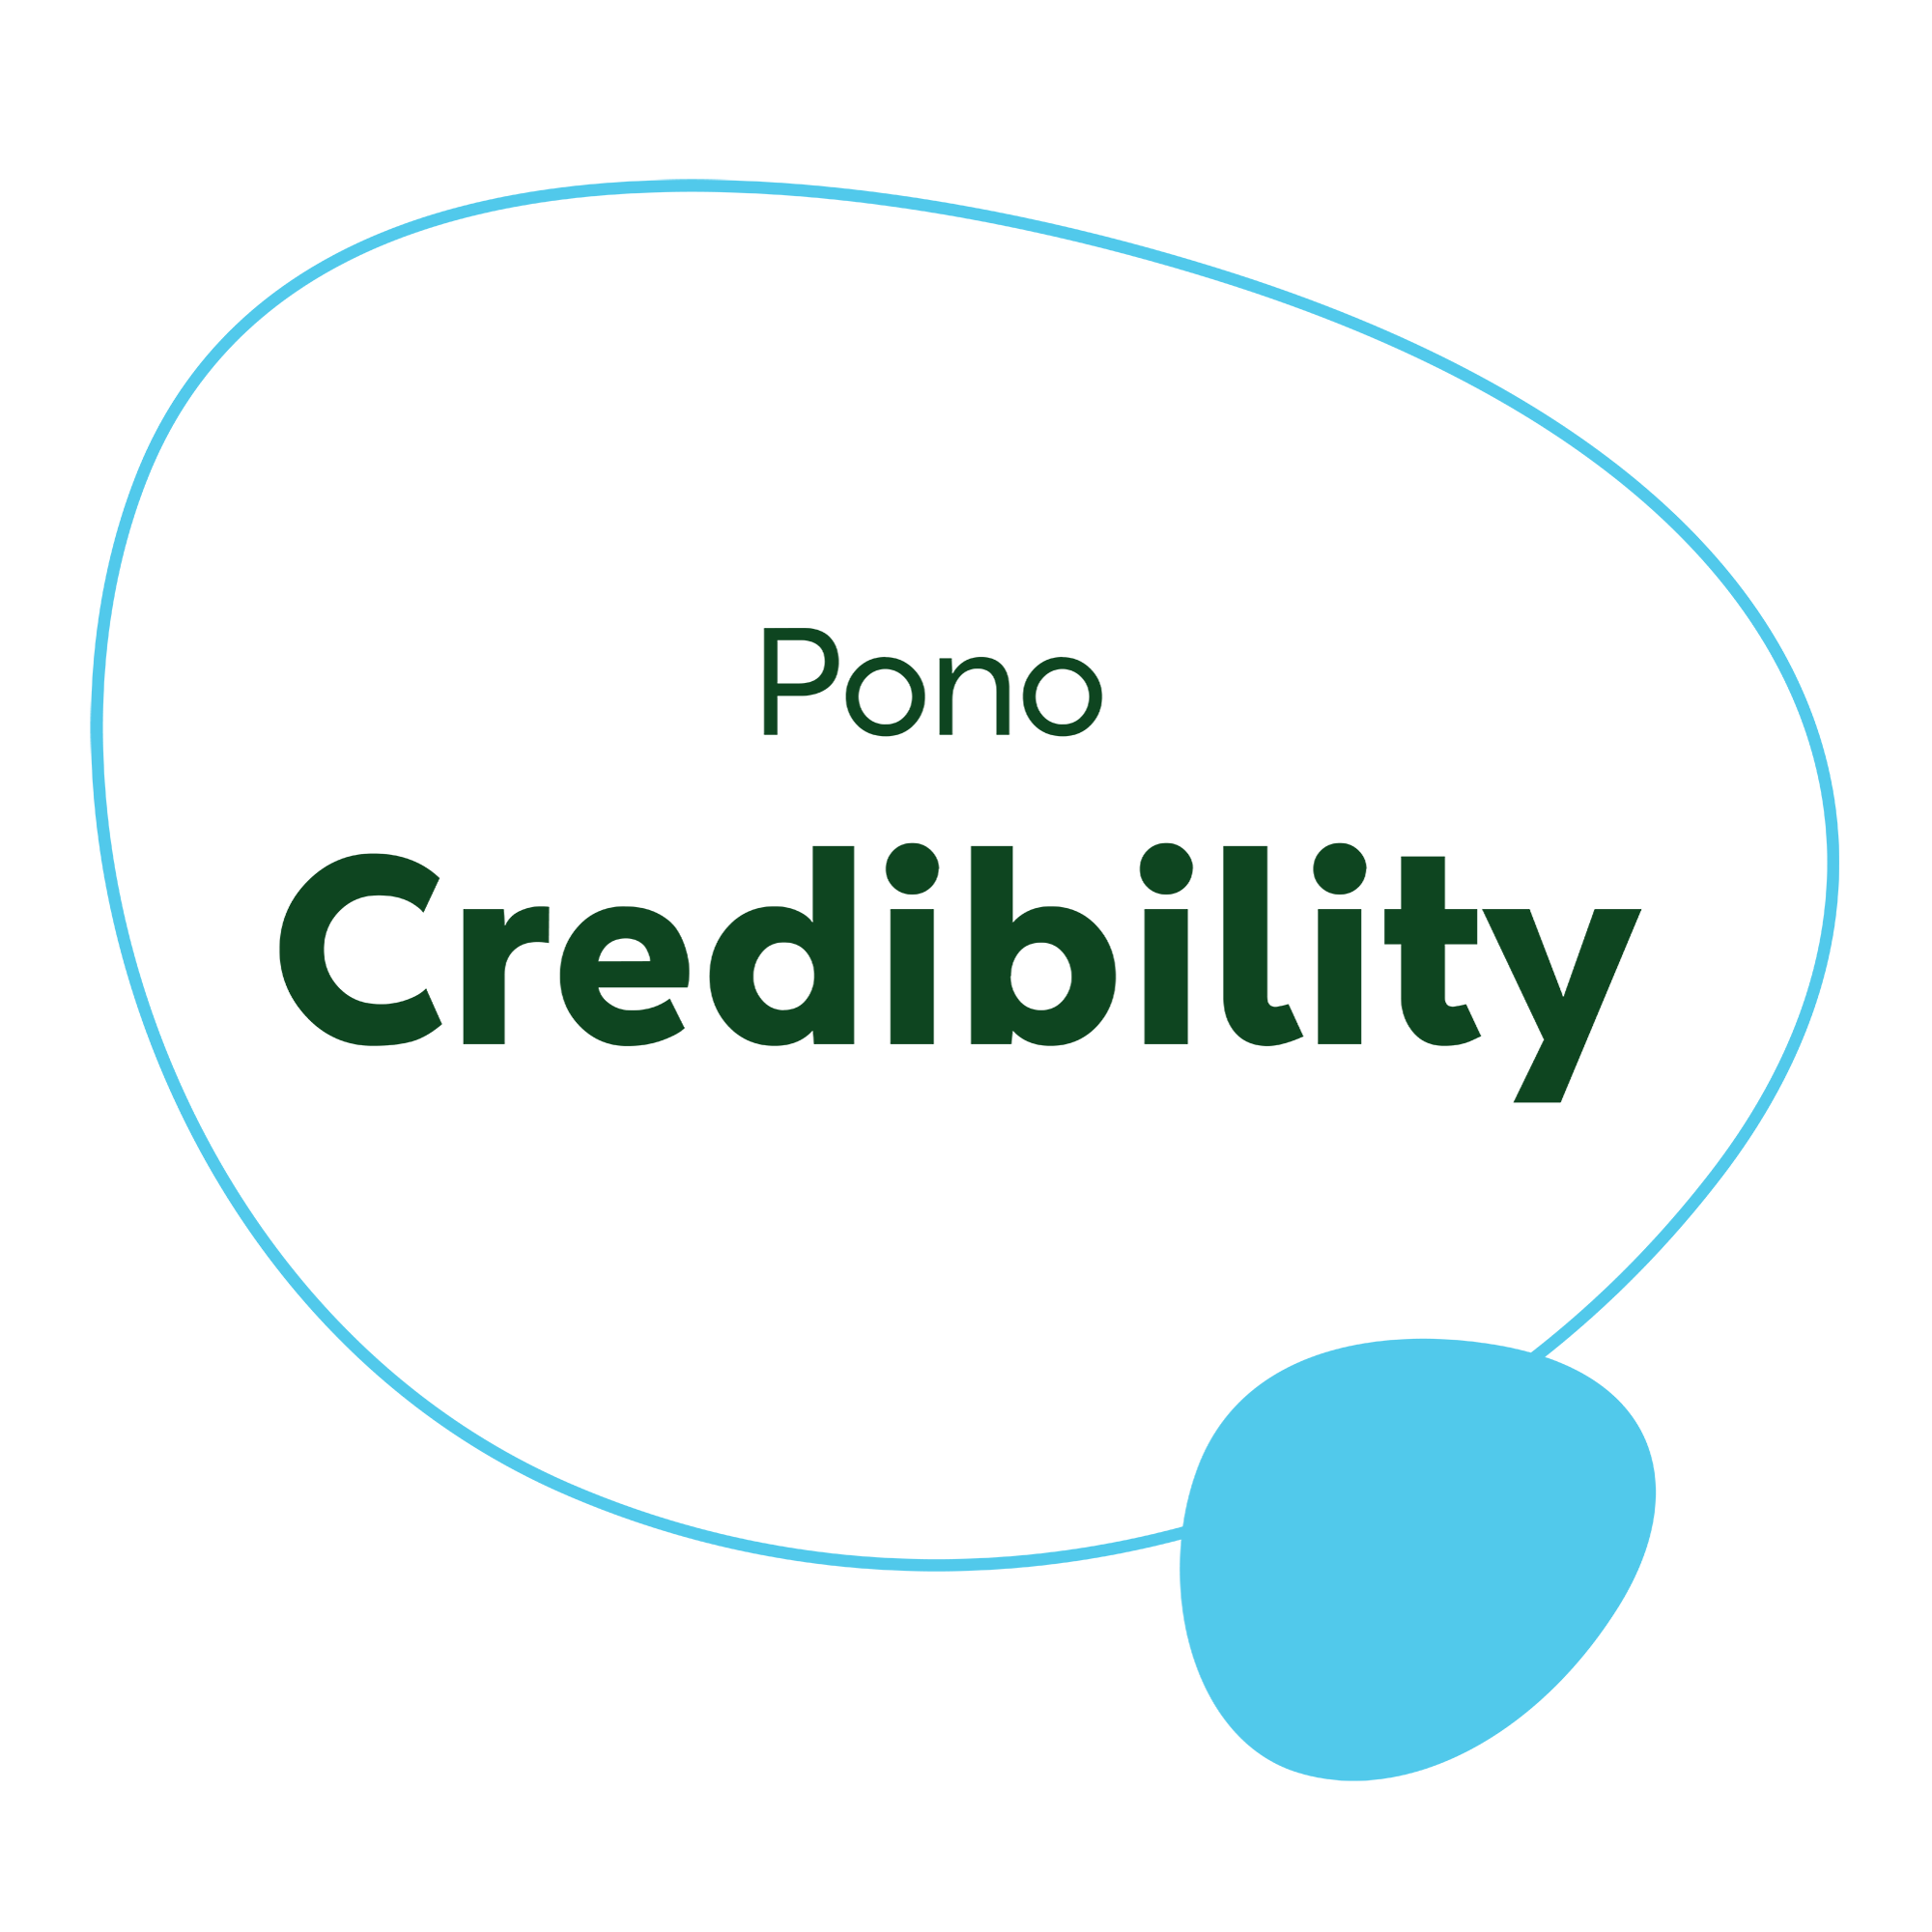 Credibility - Pono